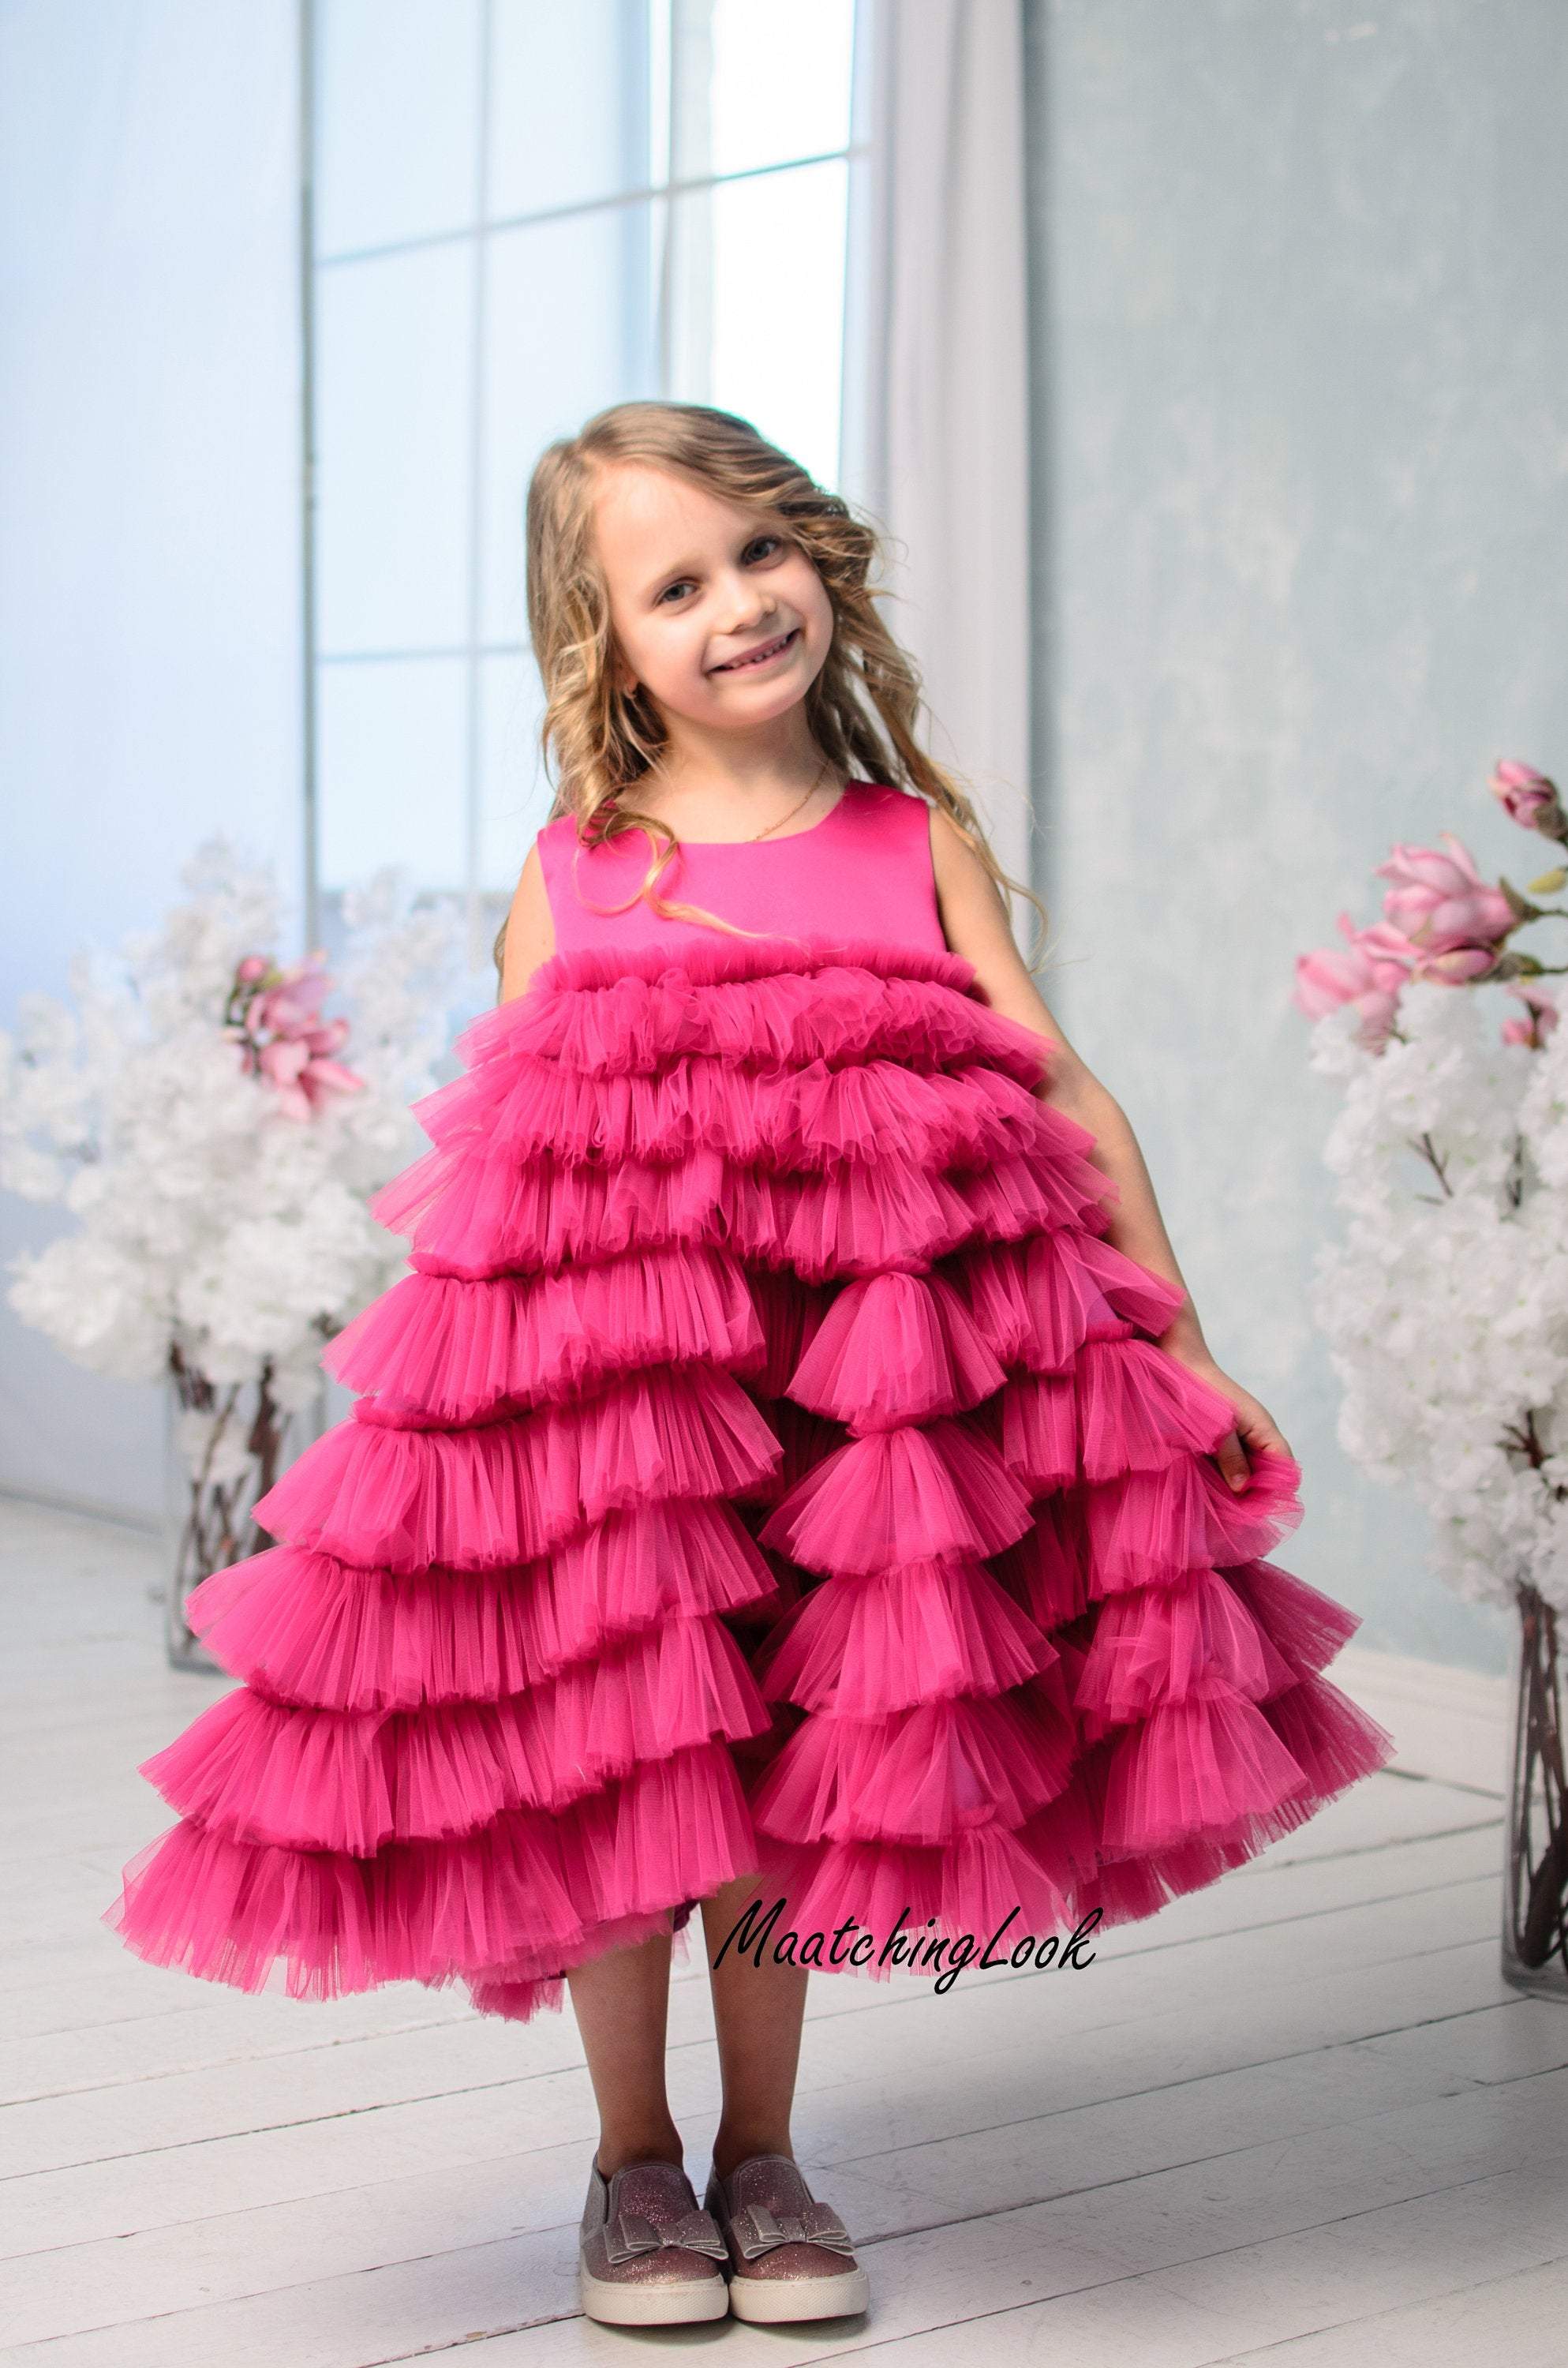 Brunette Baby Girl Pink Dress Sitting Stock Photo 634405385 | Shutterstock